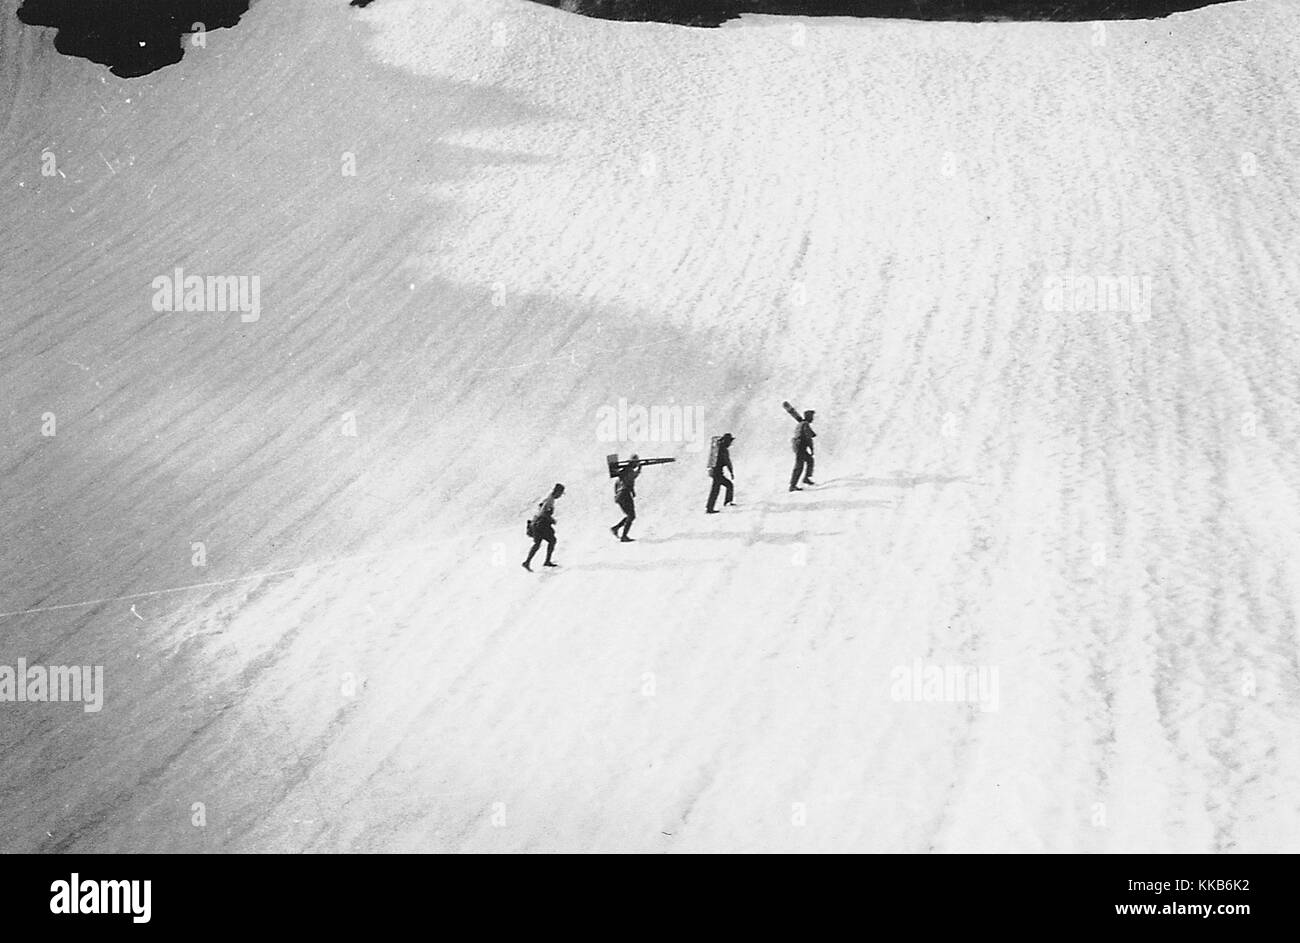 Un usgs campo topografico parte attraversando un snow drift in corrispondenza della testa del grand creek, Washington. Immagine cortesia USGS. luglio 29, 1931. Foto Stock